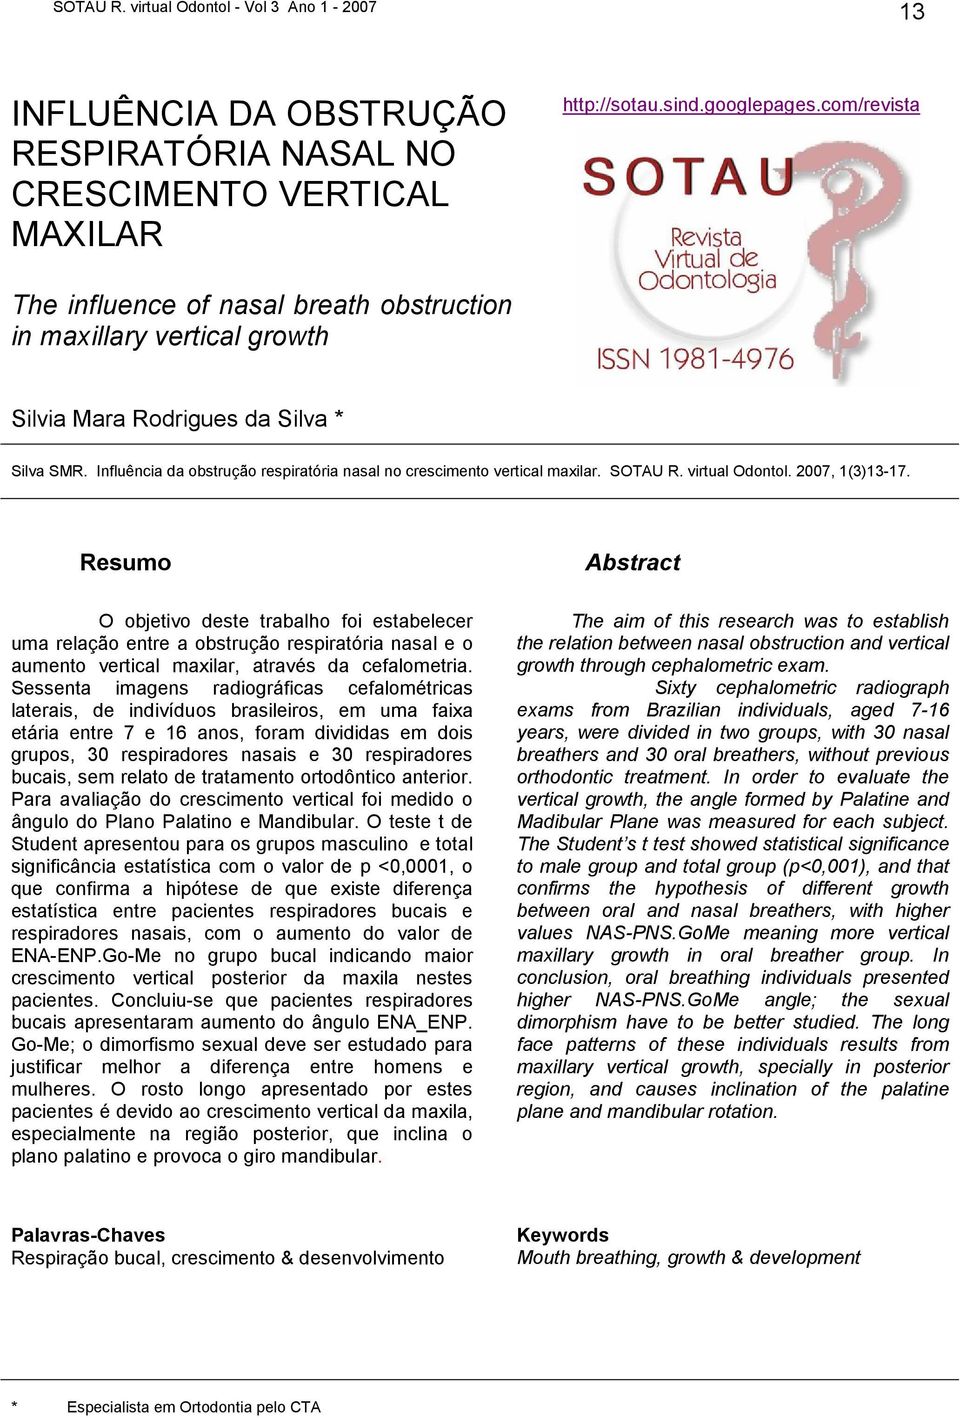 Influência da obstrução respiratória nasal no crescimento vertical maxilar. SOTAU R. virtual Odontol. 2007, 1(3)13-17.